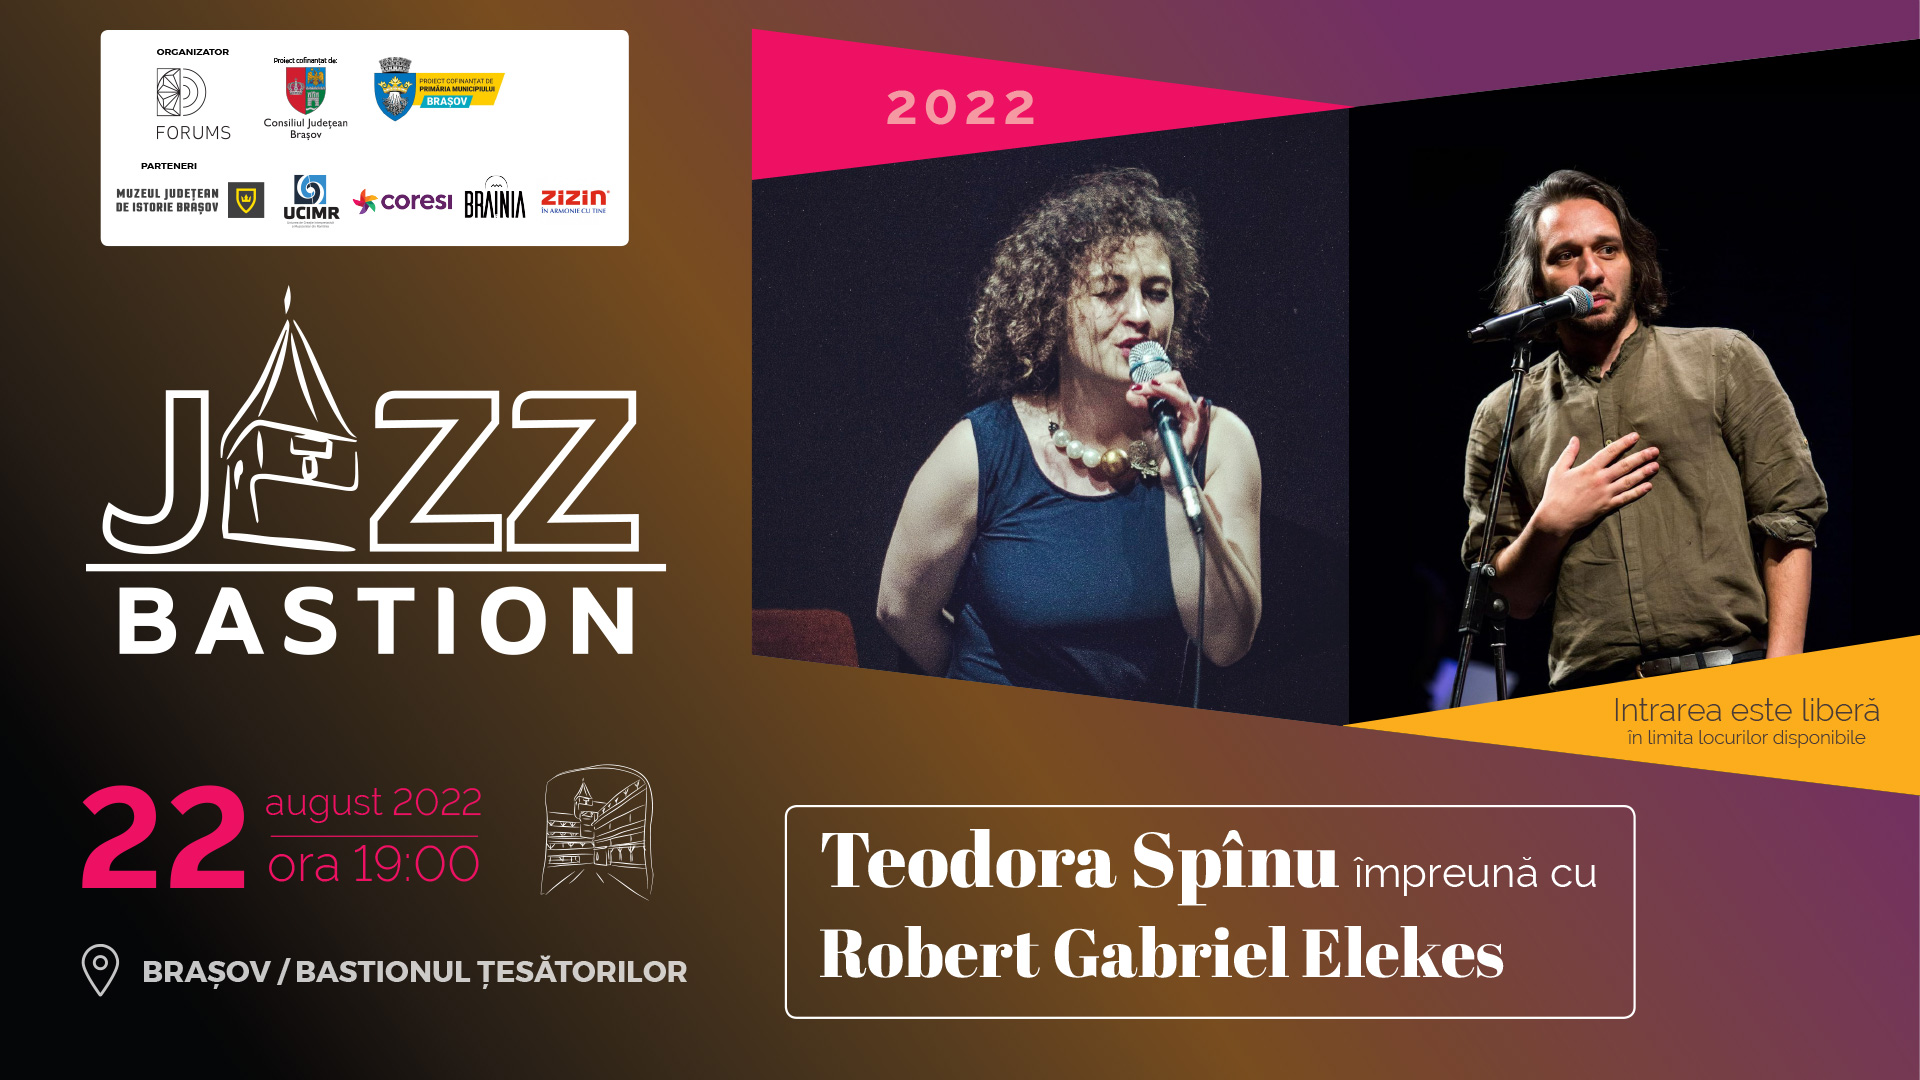 Teodora Spînu împreună cu Robert Elekes la Jazz Bastion 2022